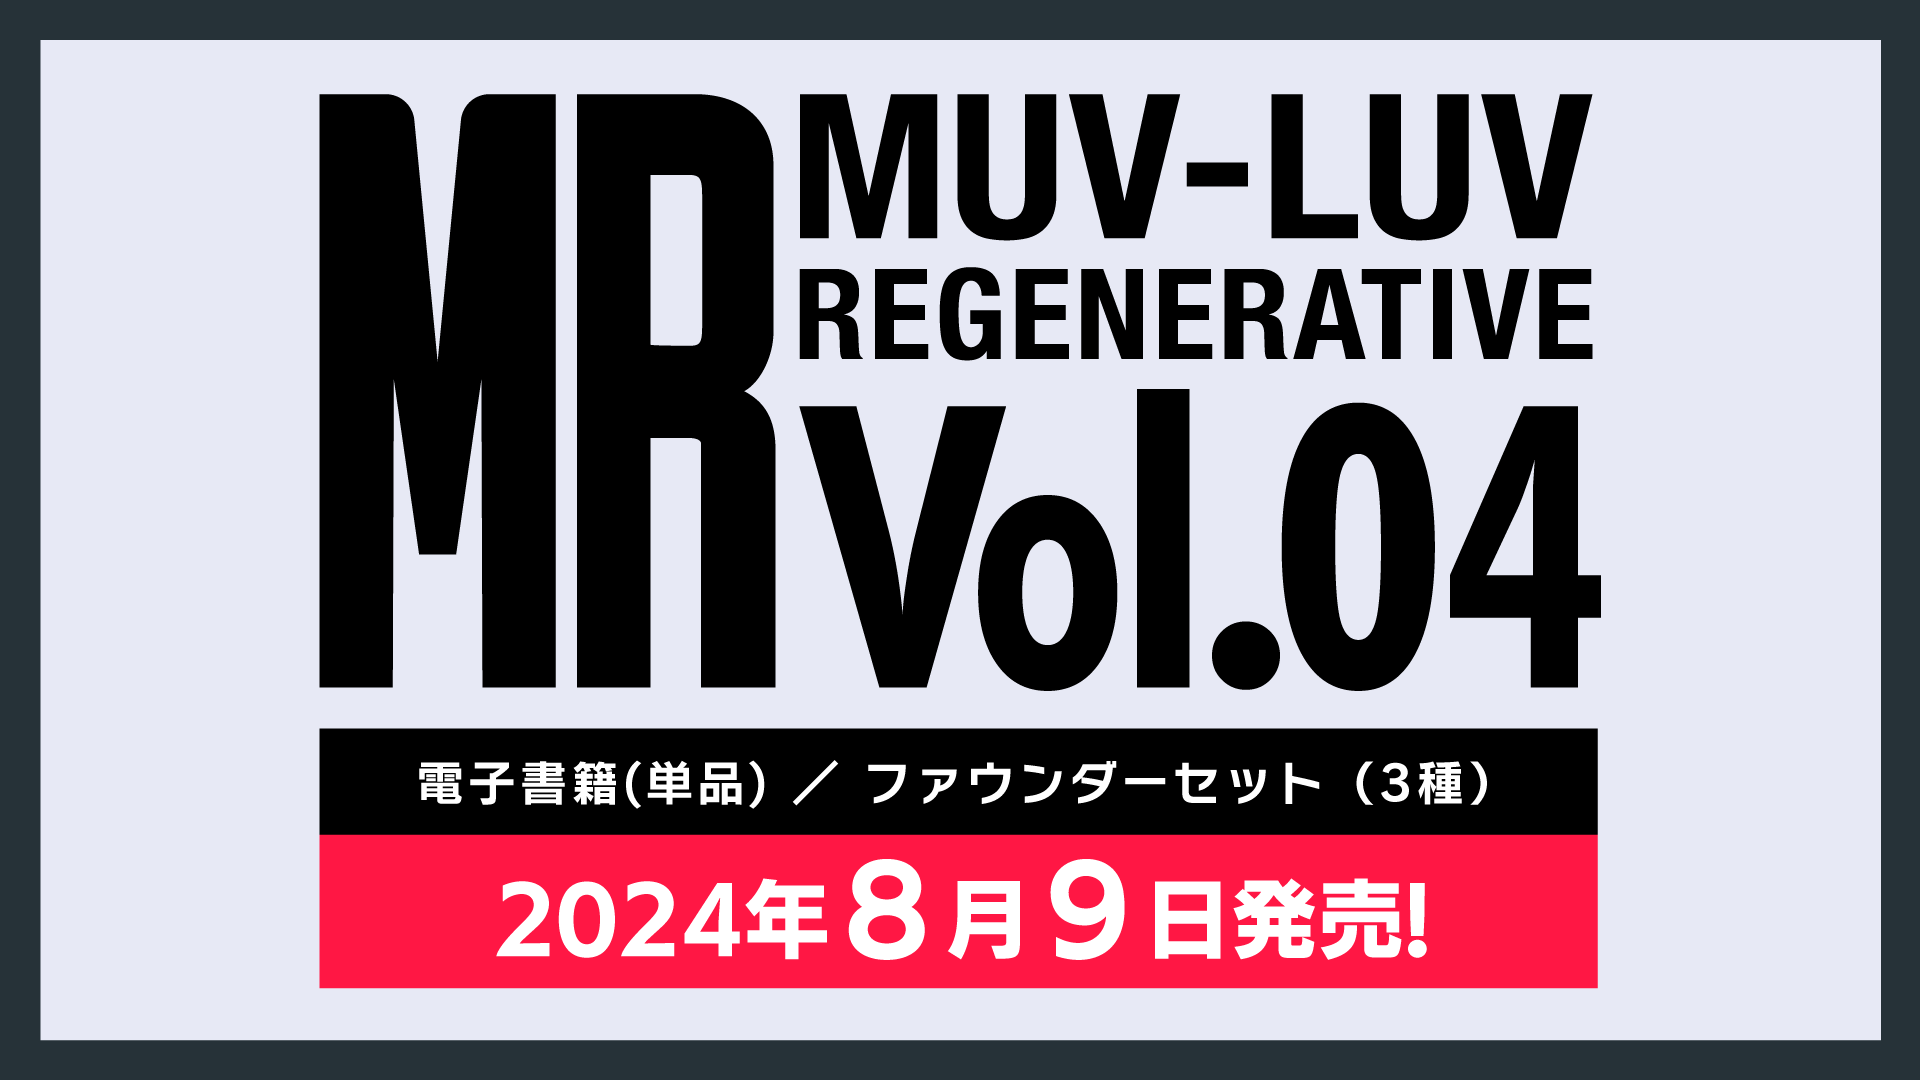 【MUV-LUV REGENERATIVE Vol.04】販売ラインナップのご紹介およびファウンダーセット受付開始のお知らせ